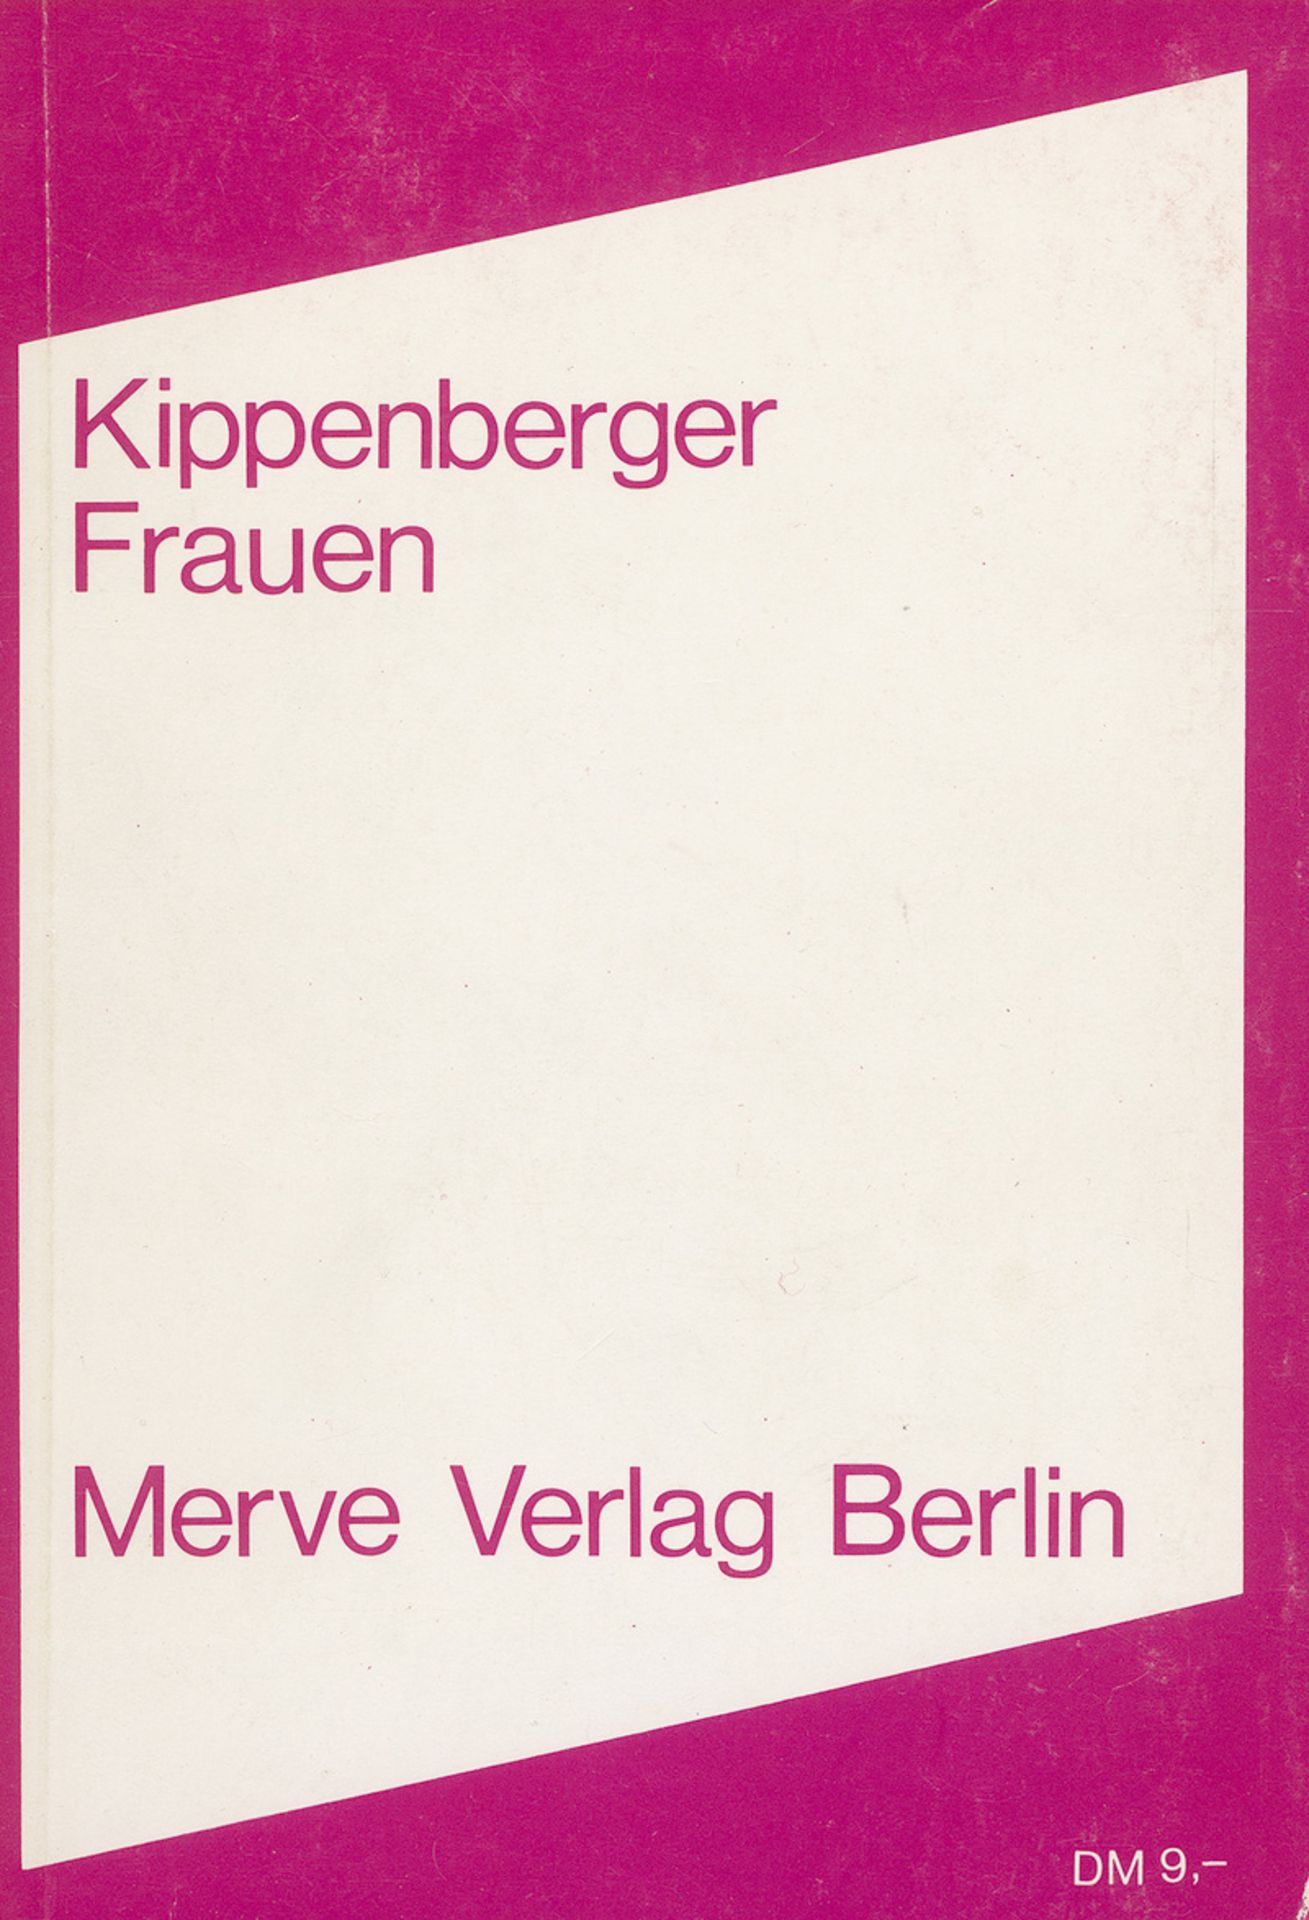 Kippenberger, Martin: Frauen